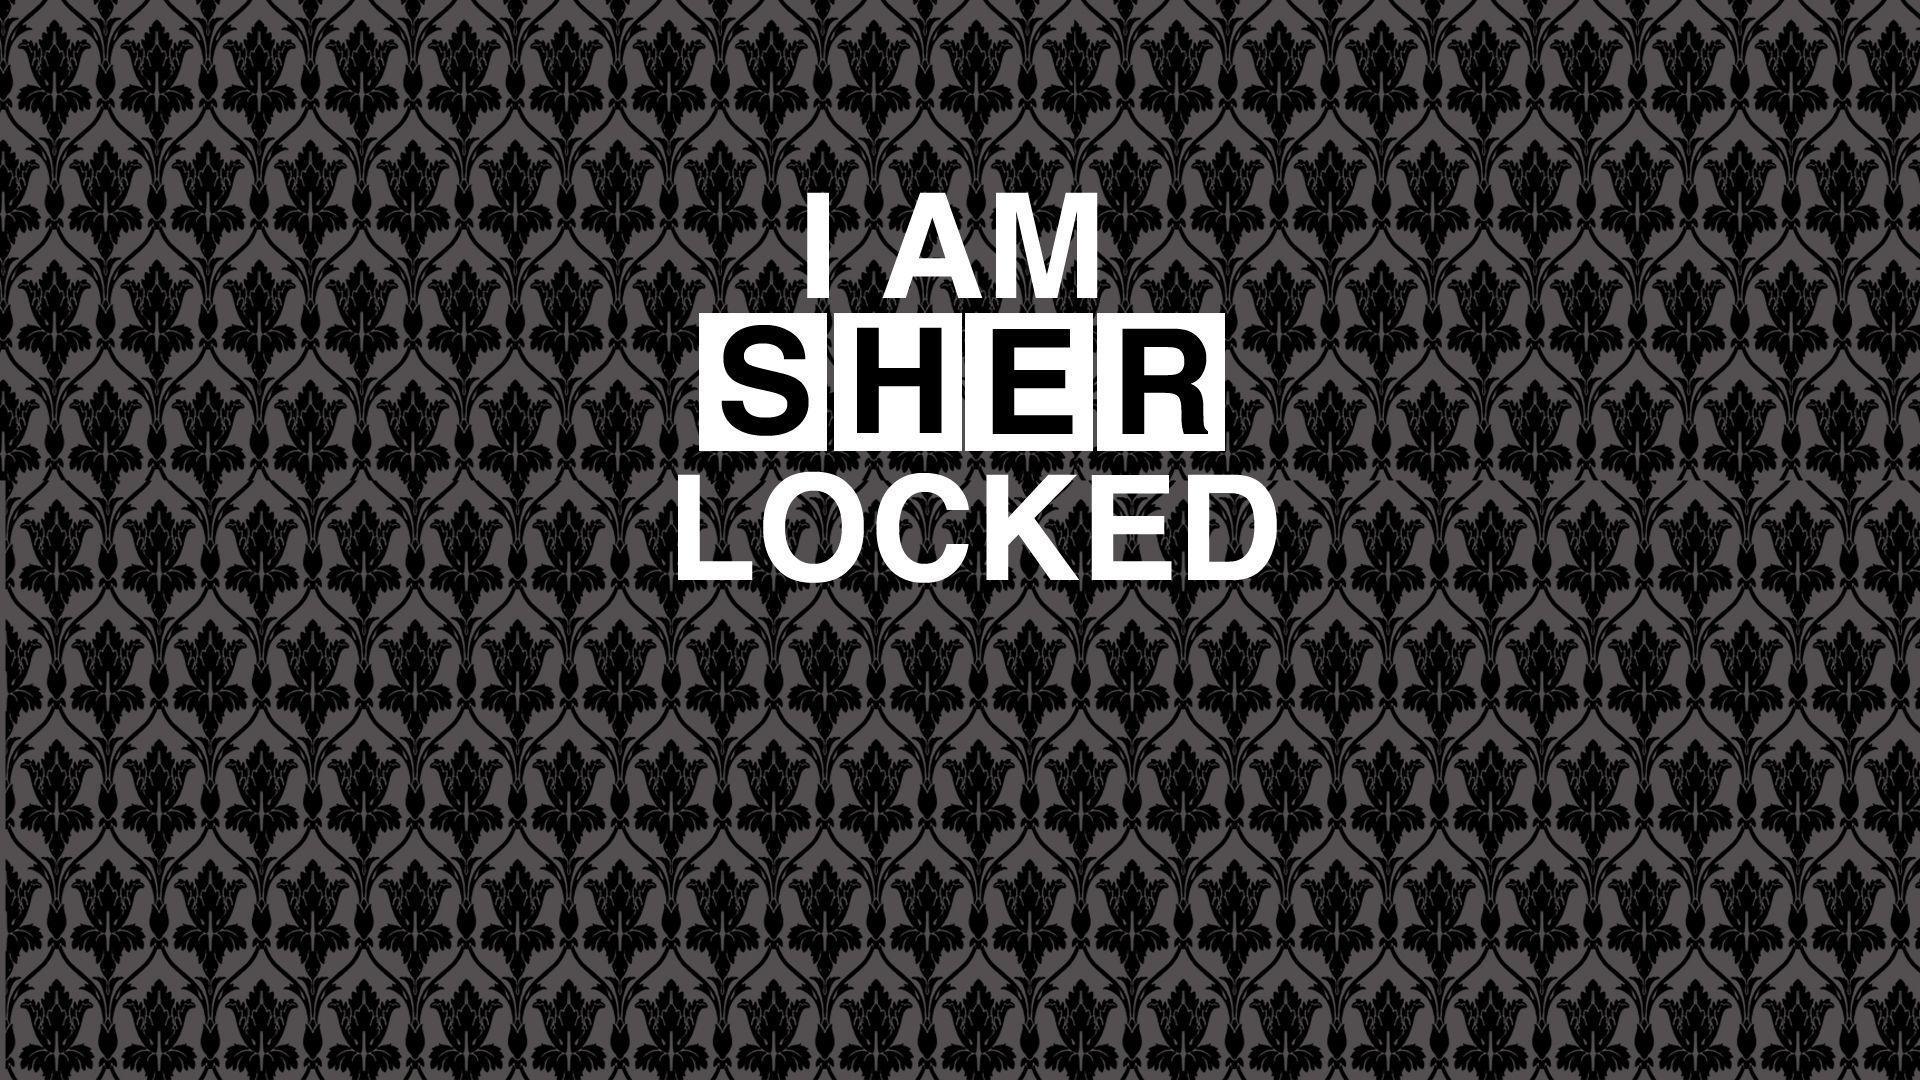 uhu: sherlock wallpaper. glued to the TV. Sherlock